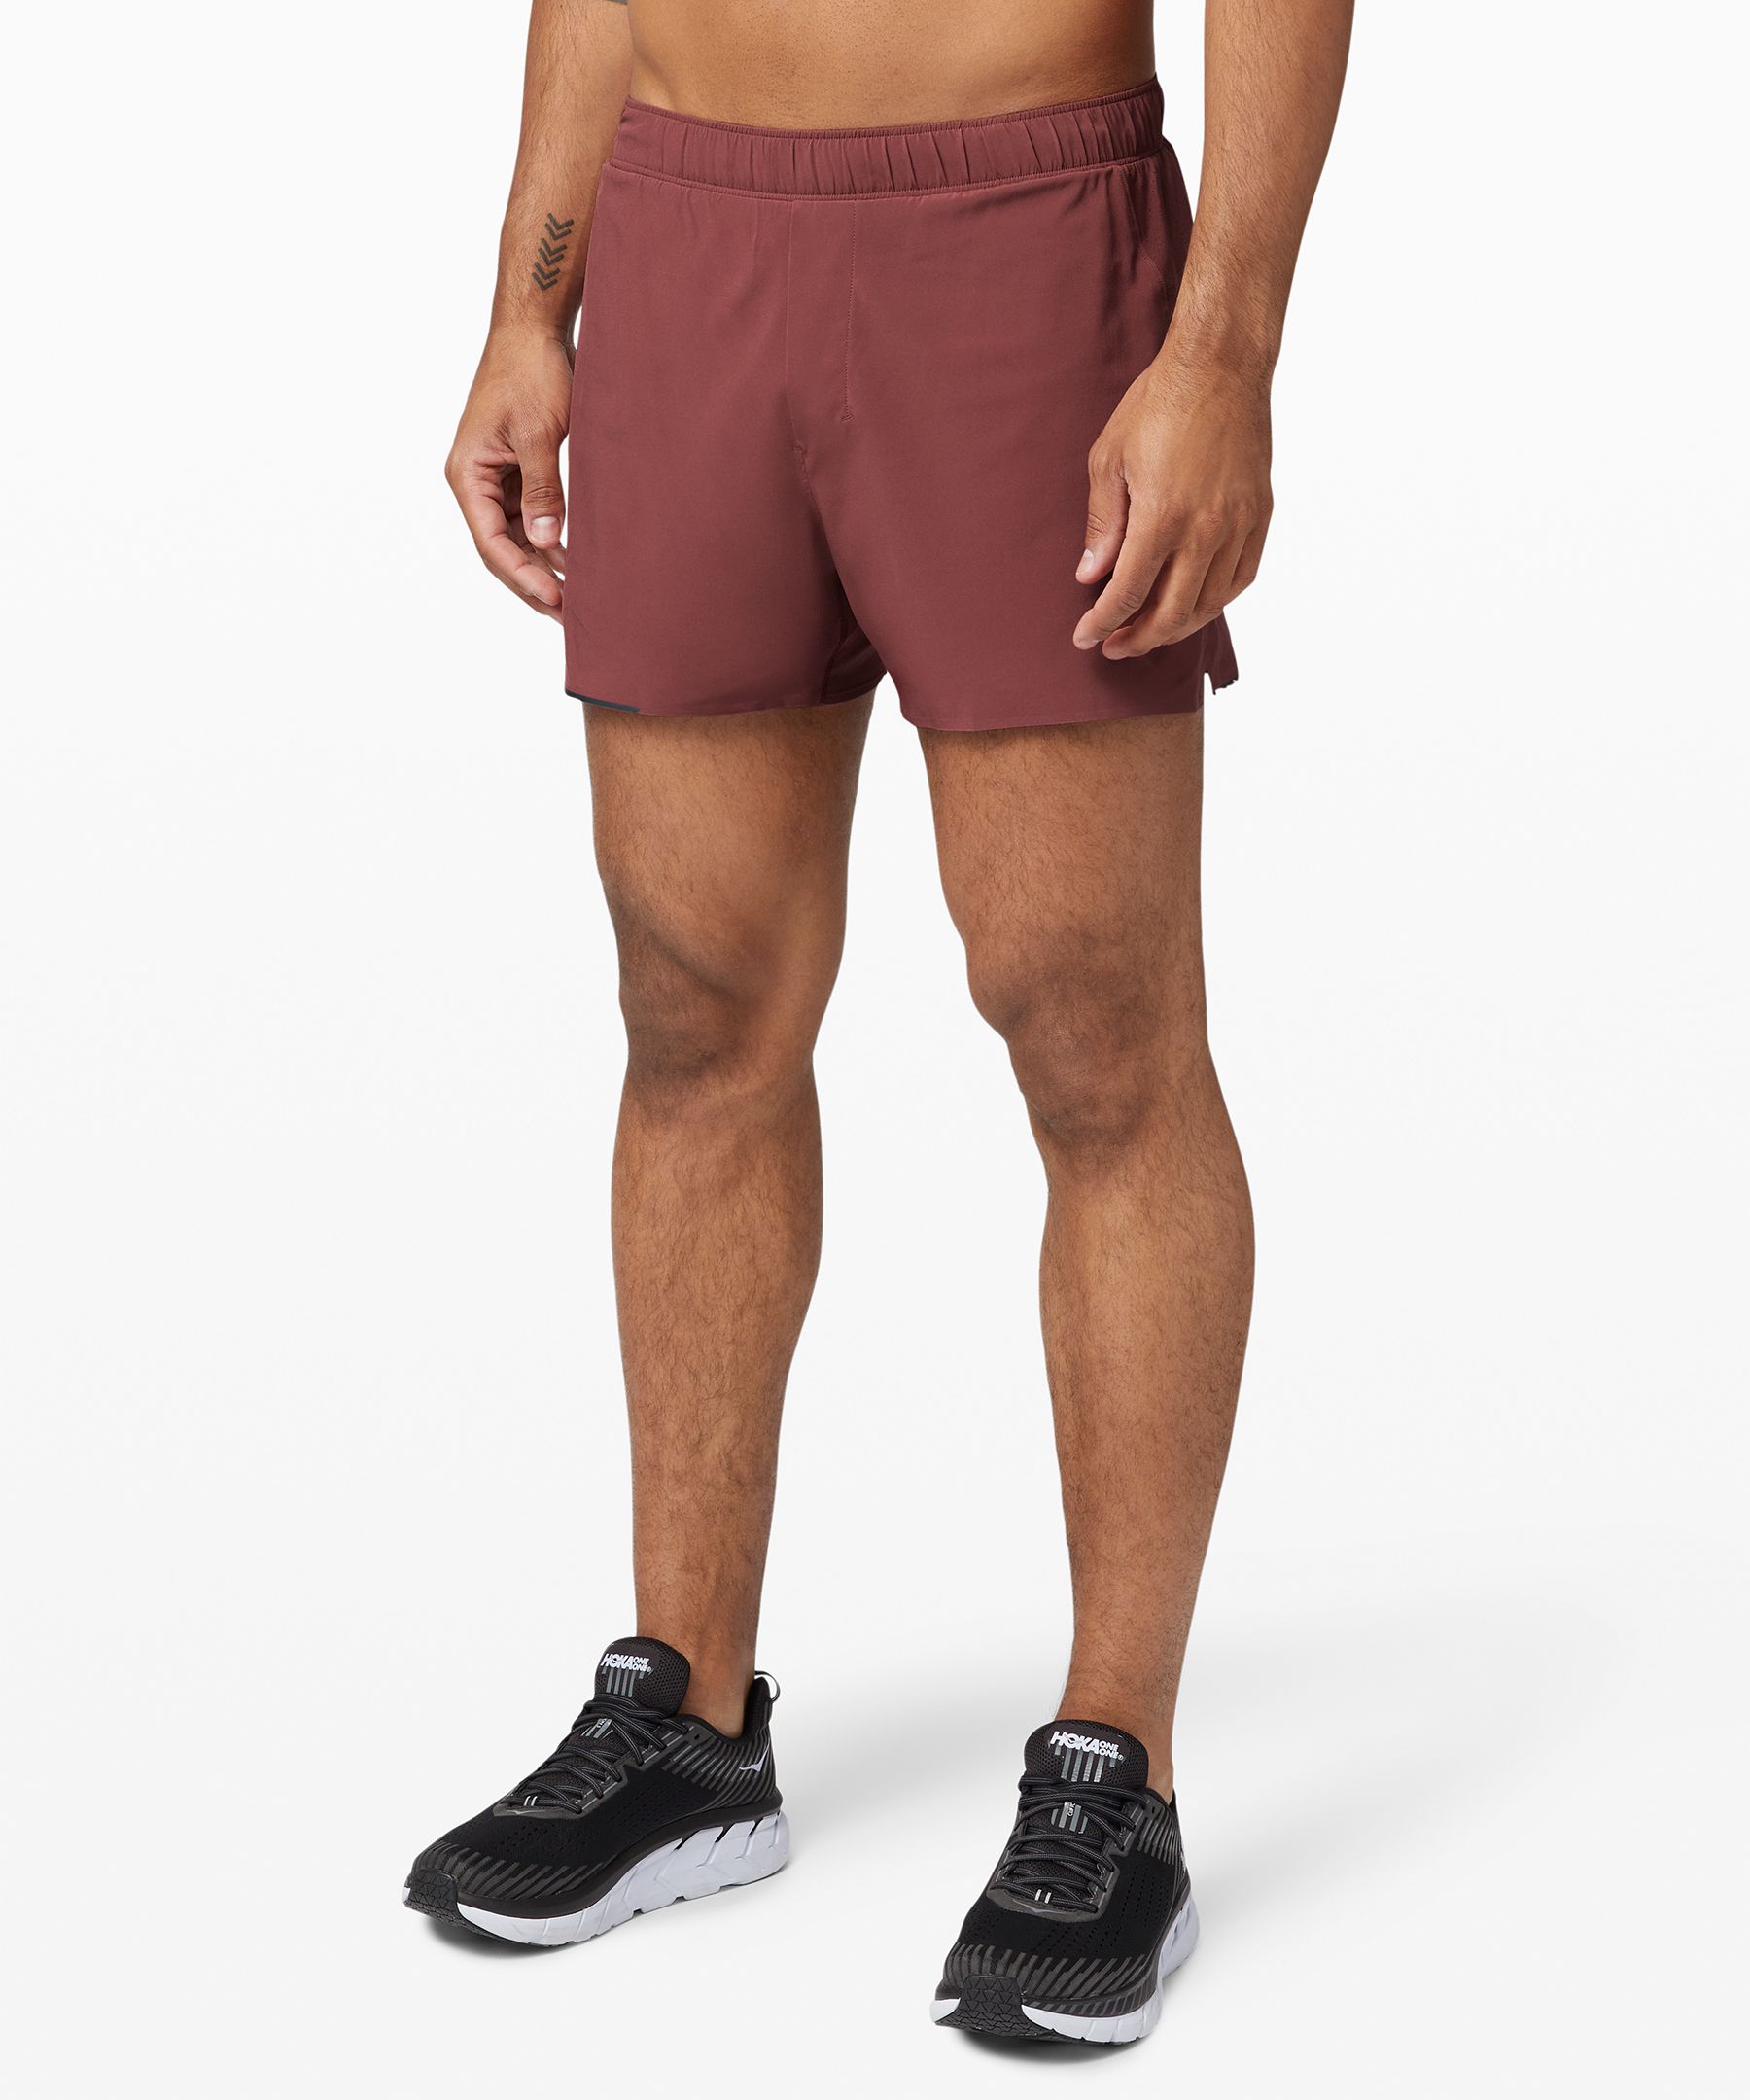 lululemon 4 inch running shorts for men's